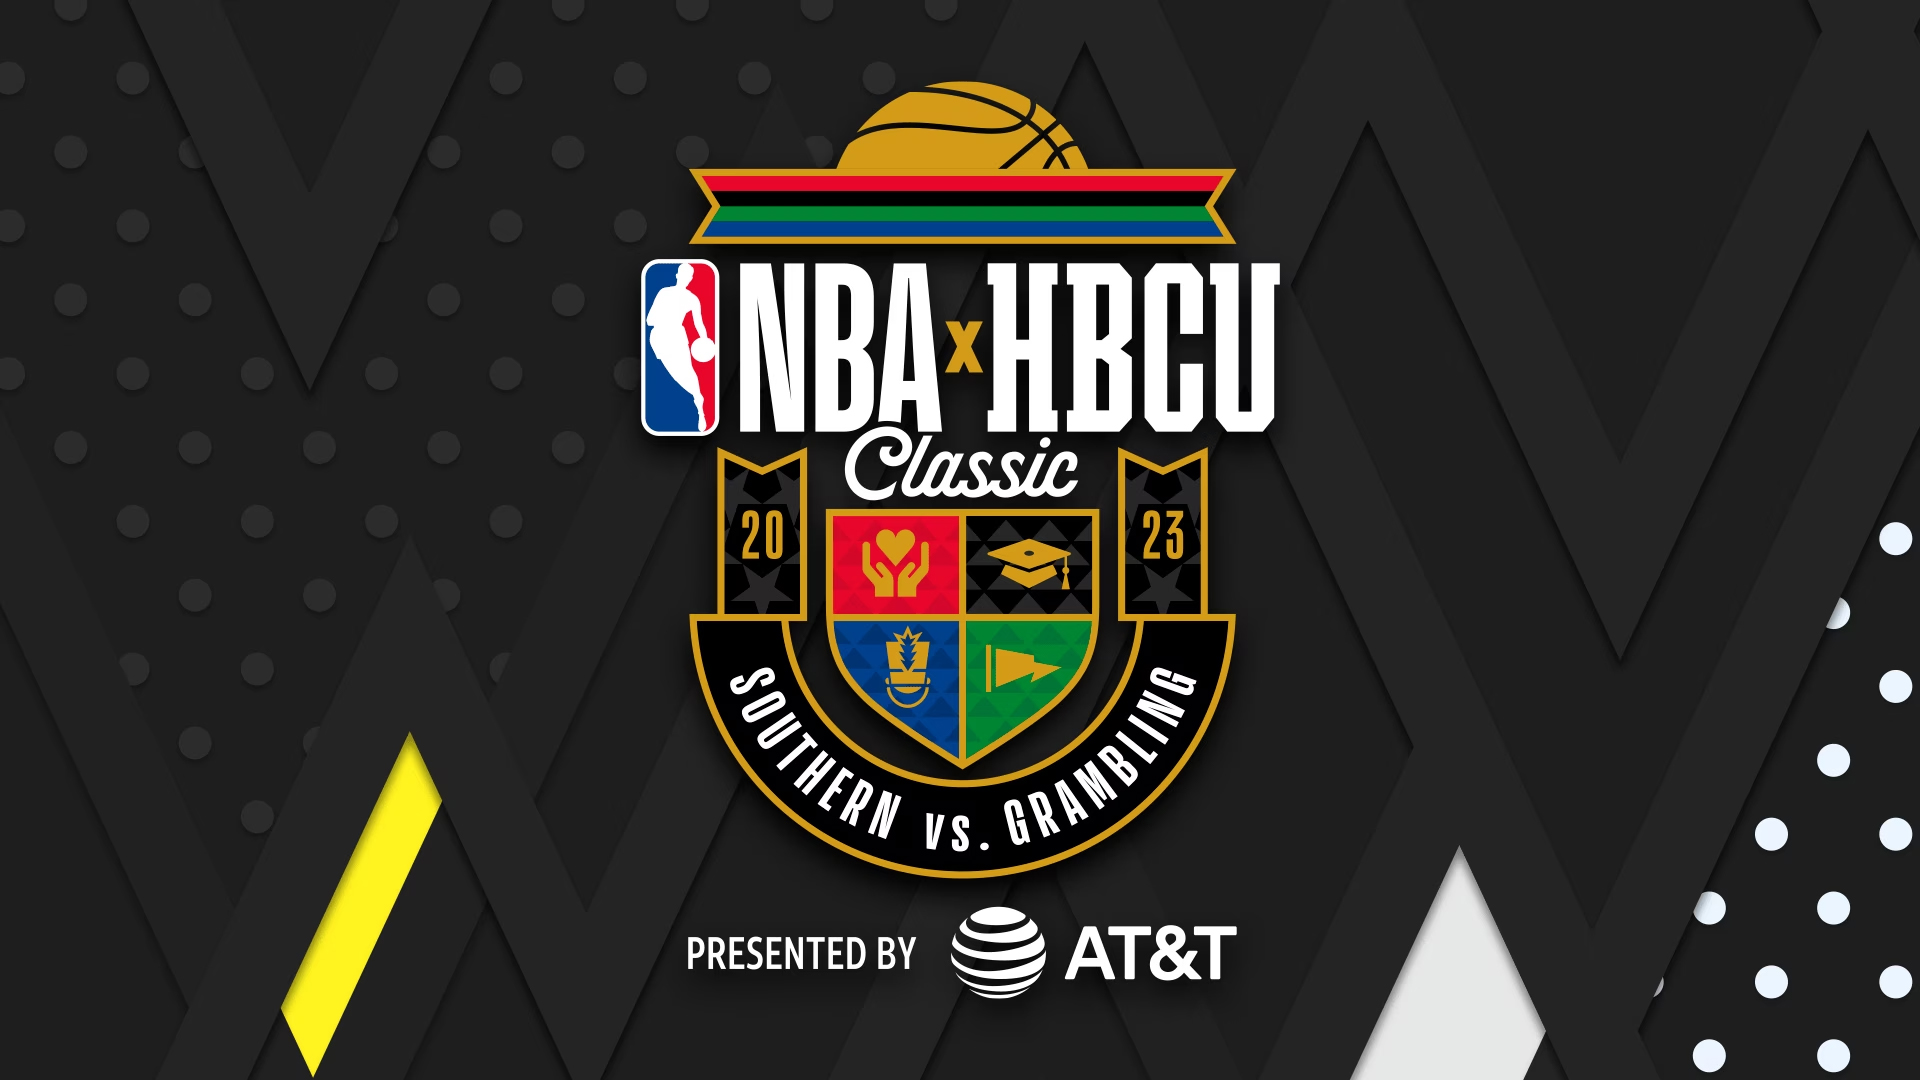 HBCU Huddle: NBA HBCU Classic Preview